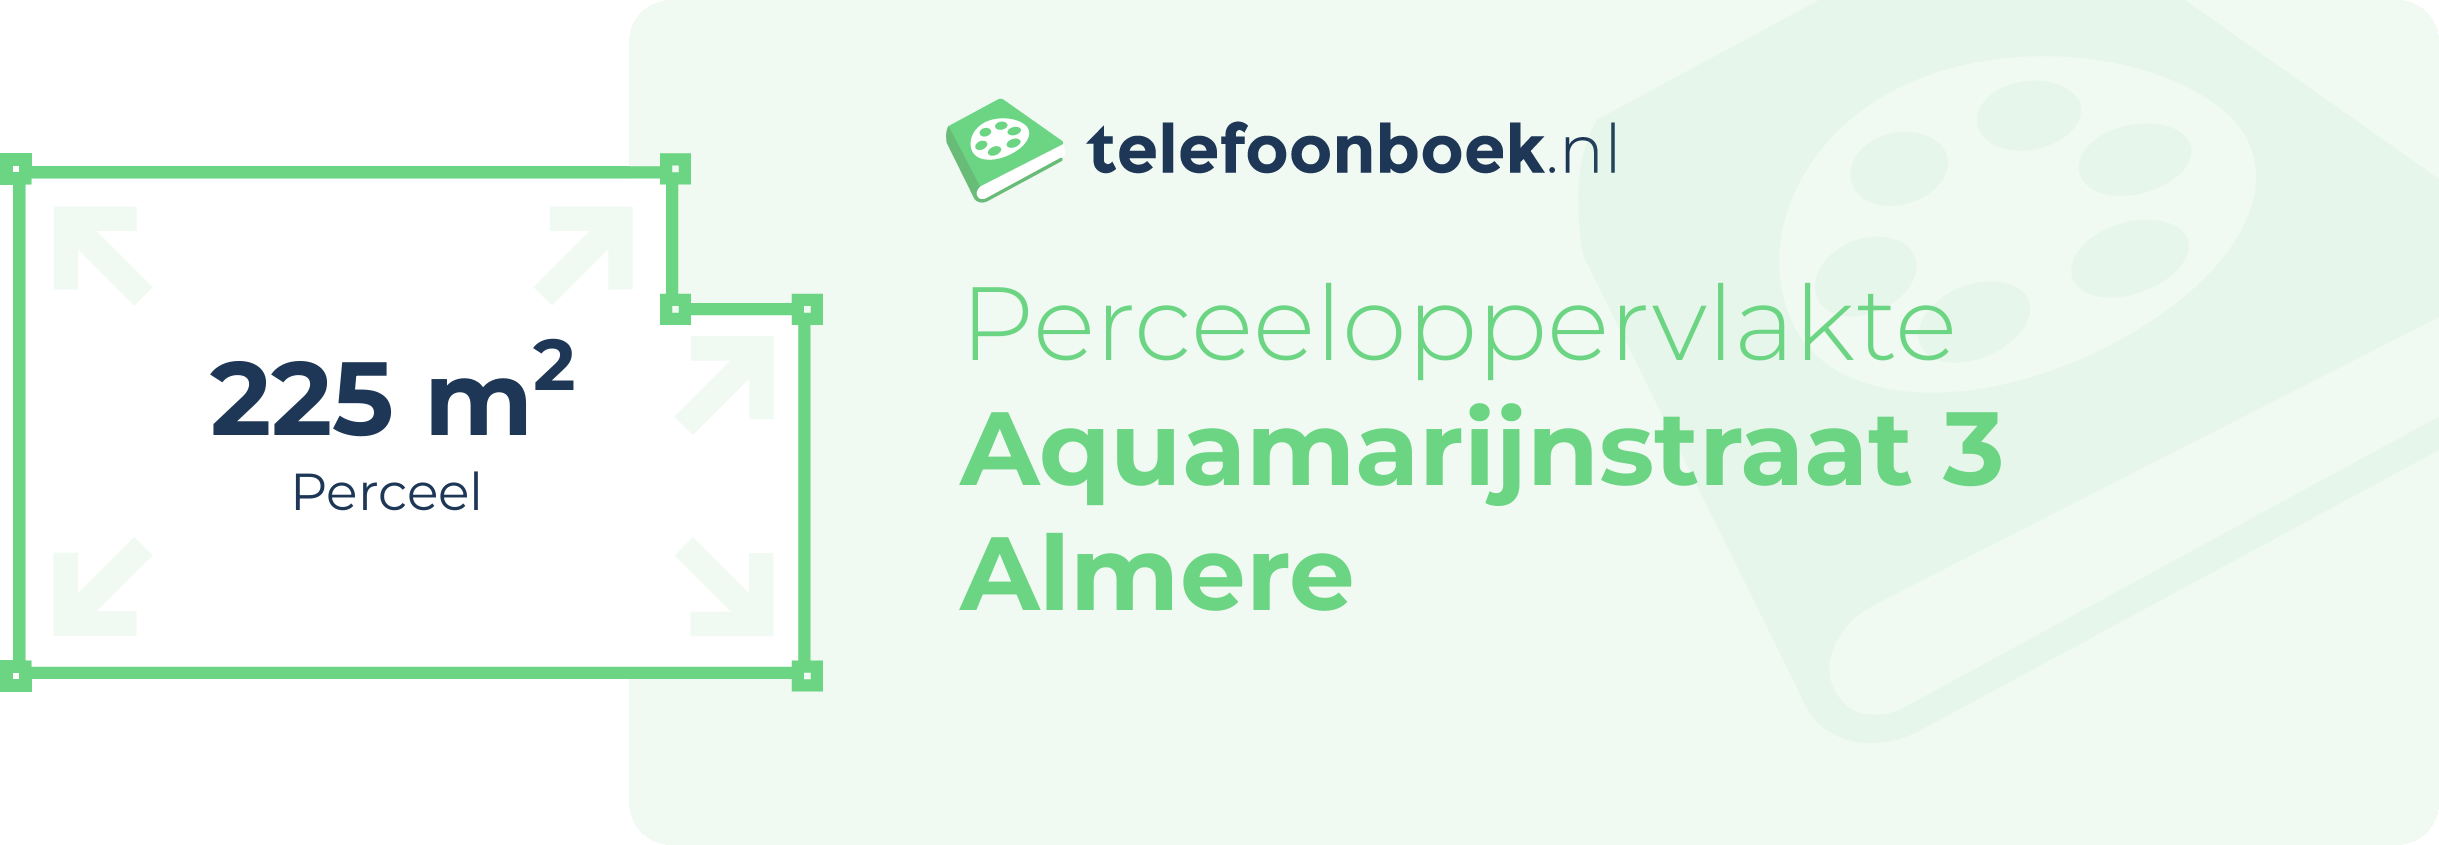 Perceeloppervlakte Aquamarijnstraat 3 Almere